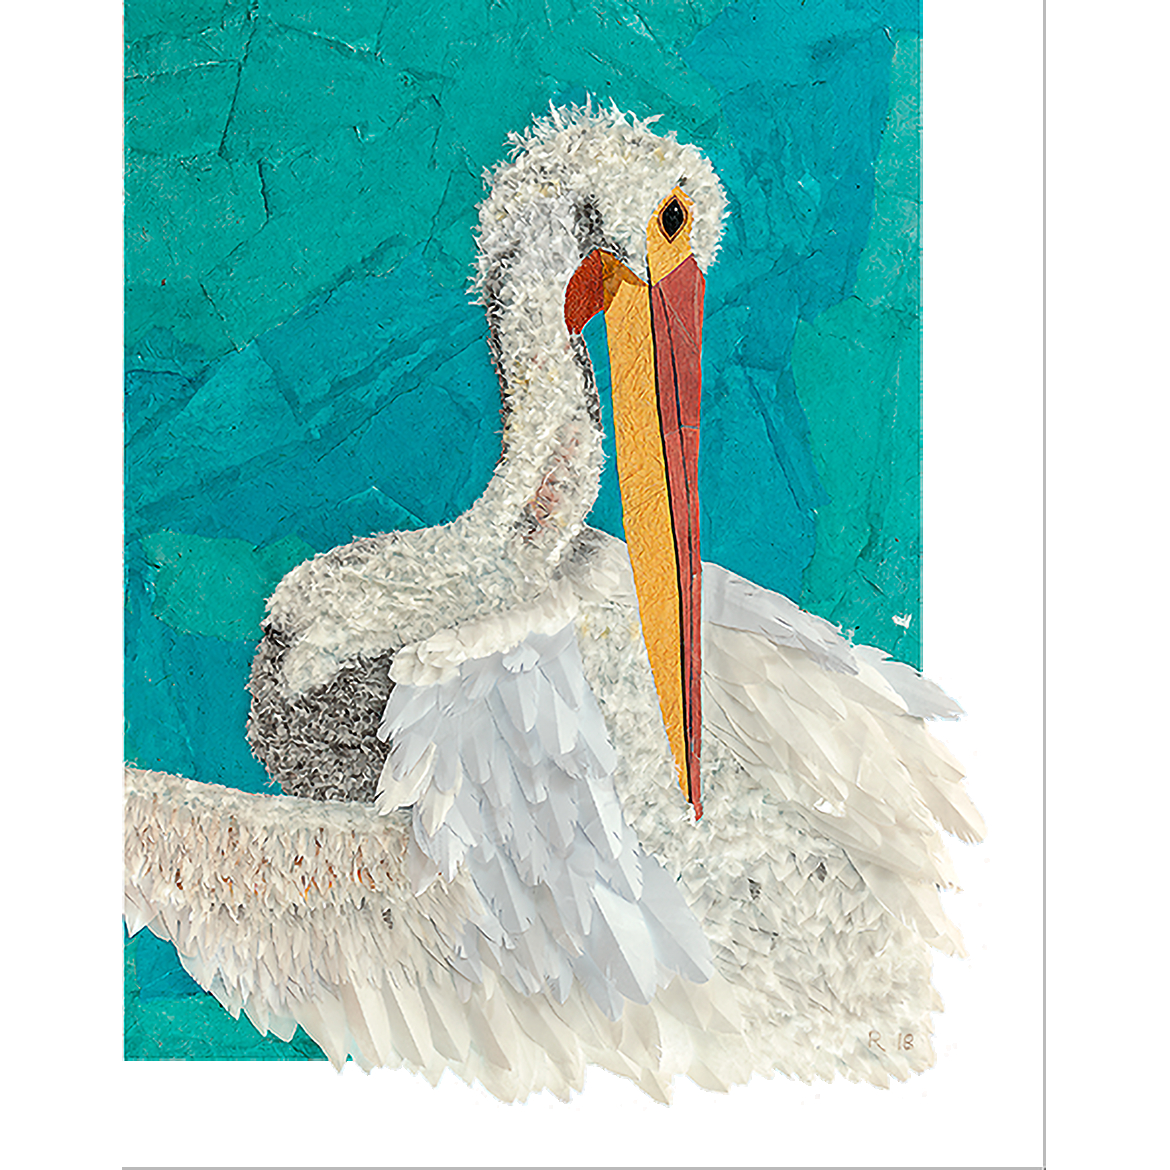 RA - Pelican Preening